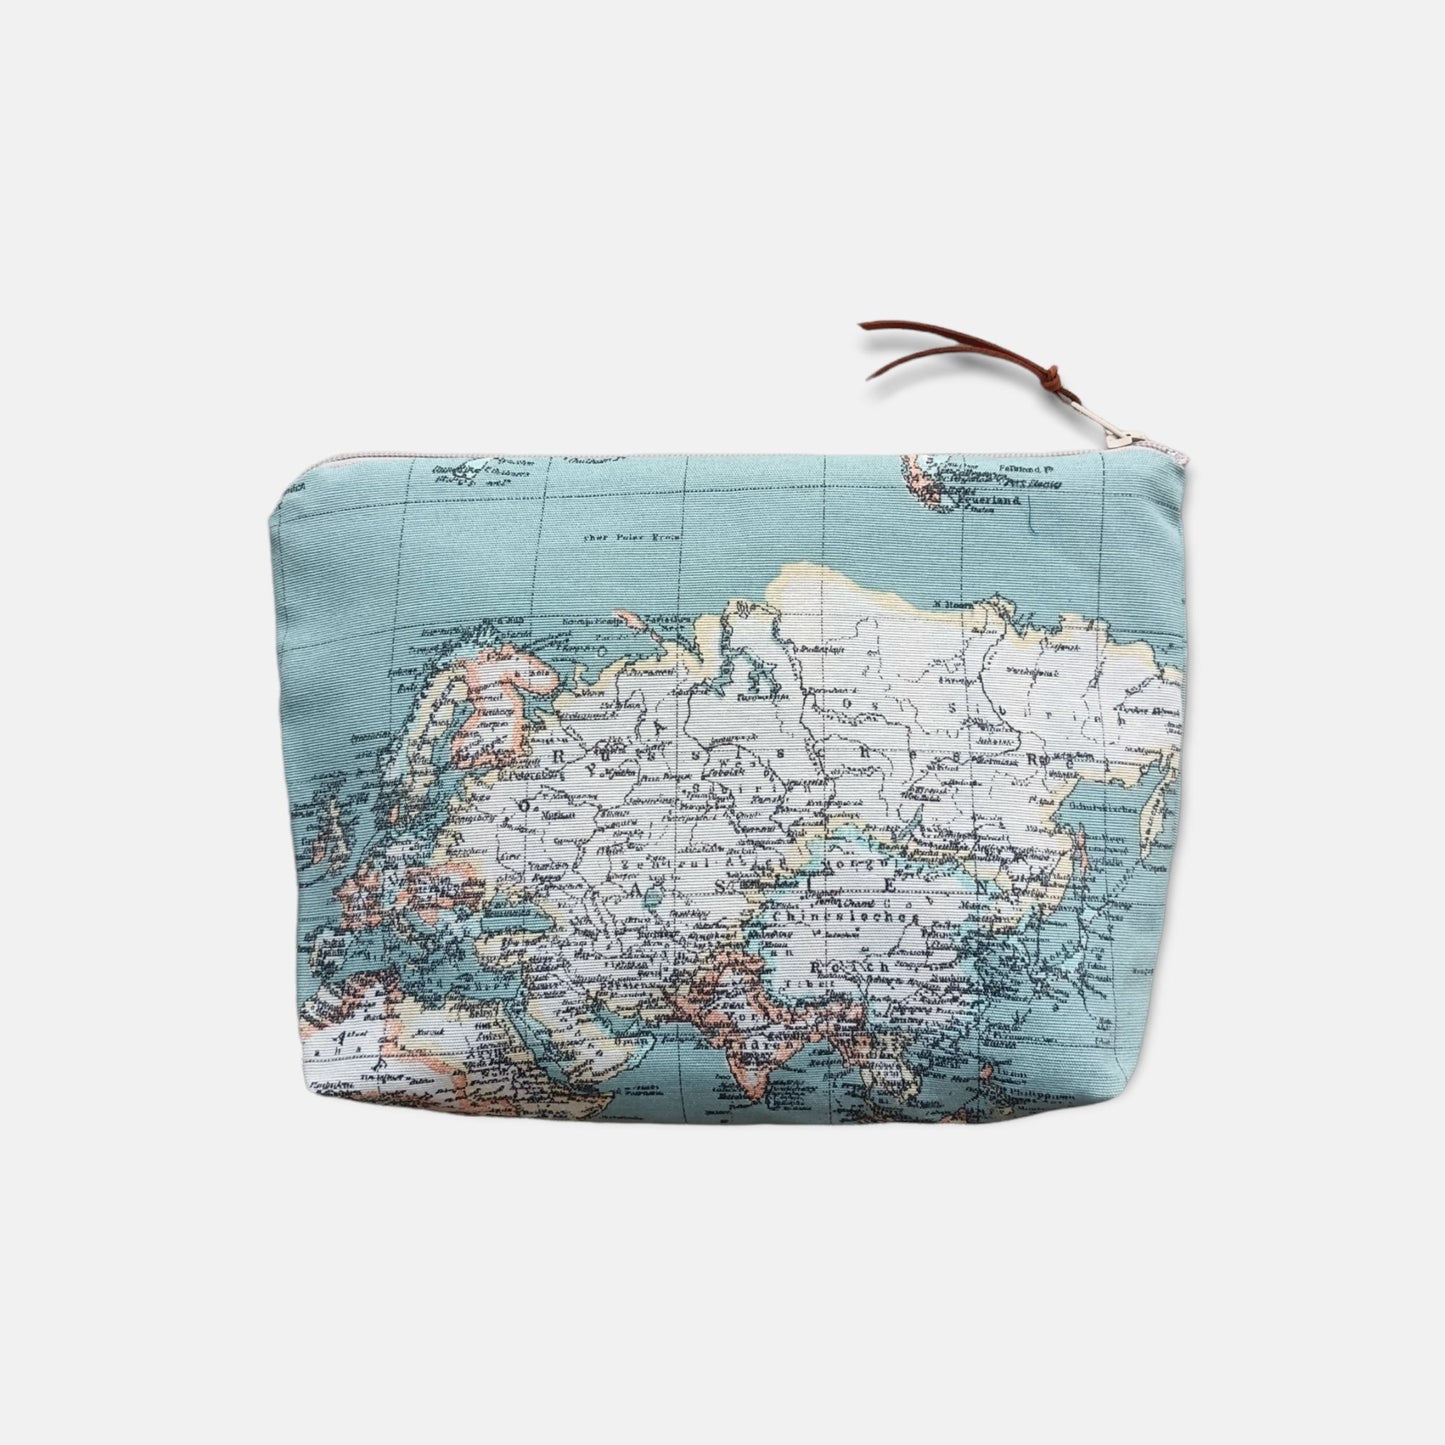 Make-up bag - World Map Blue - Maslinda Designs